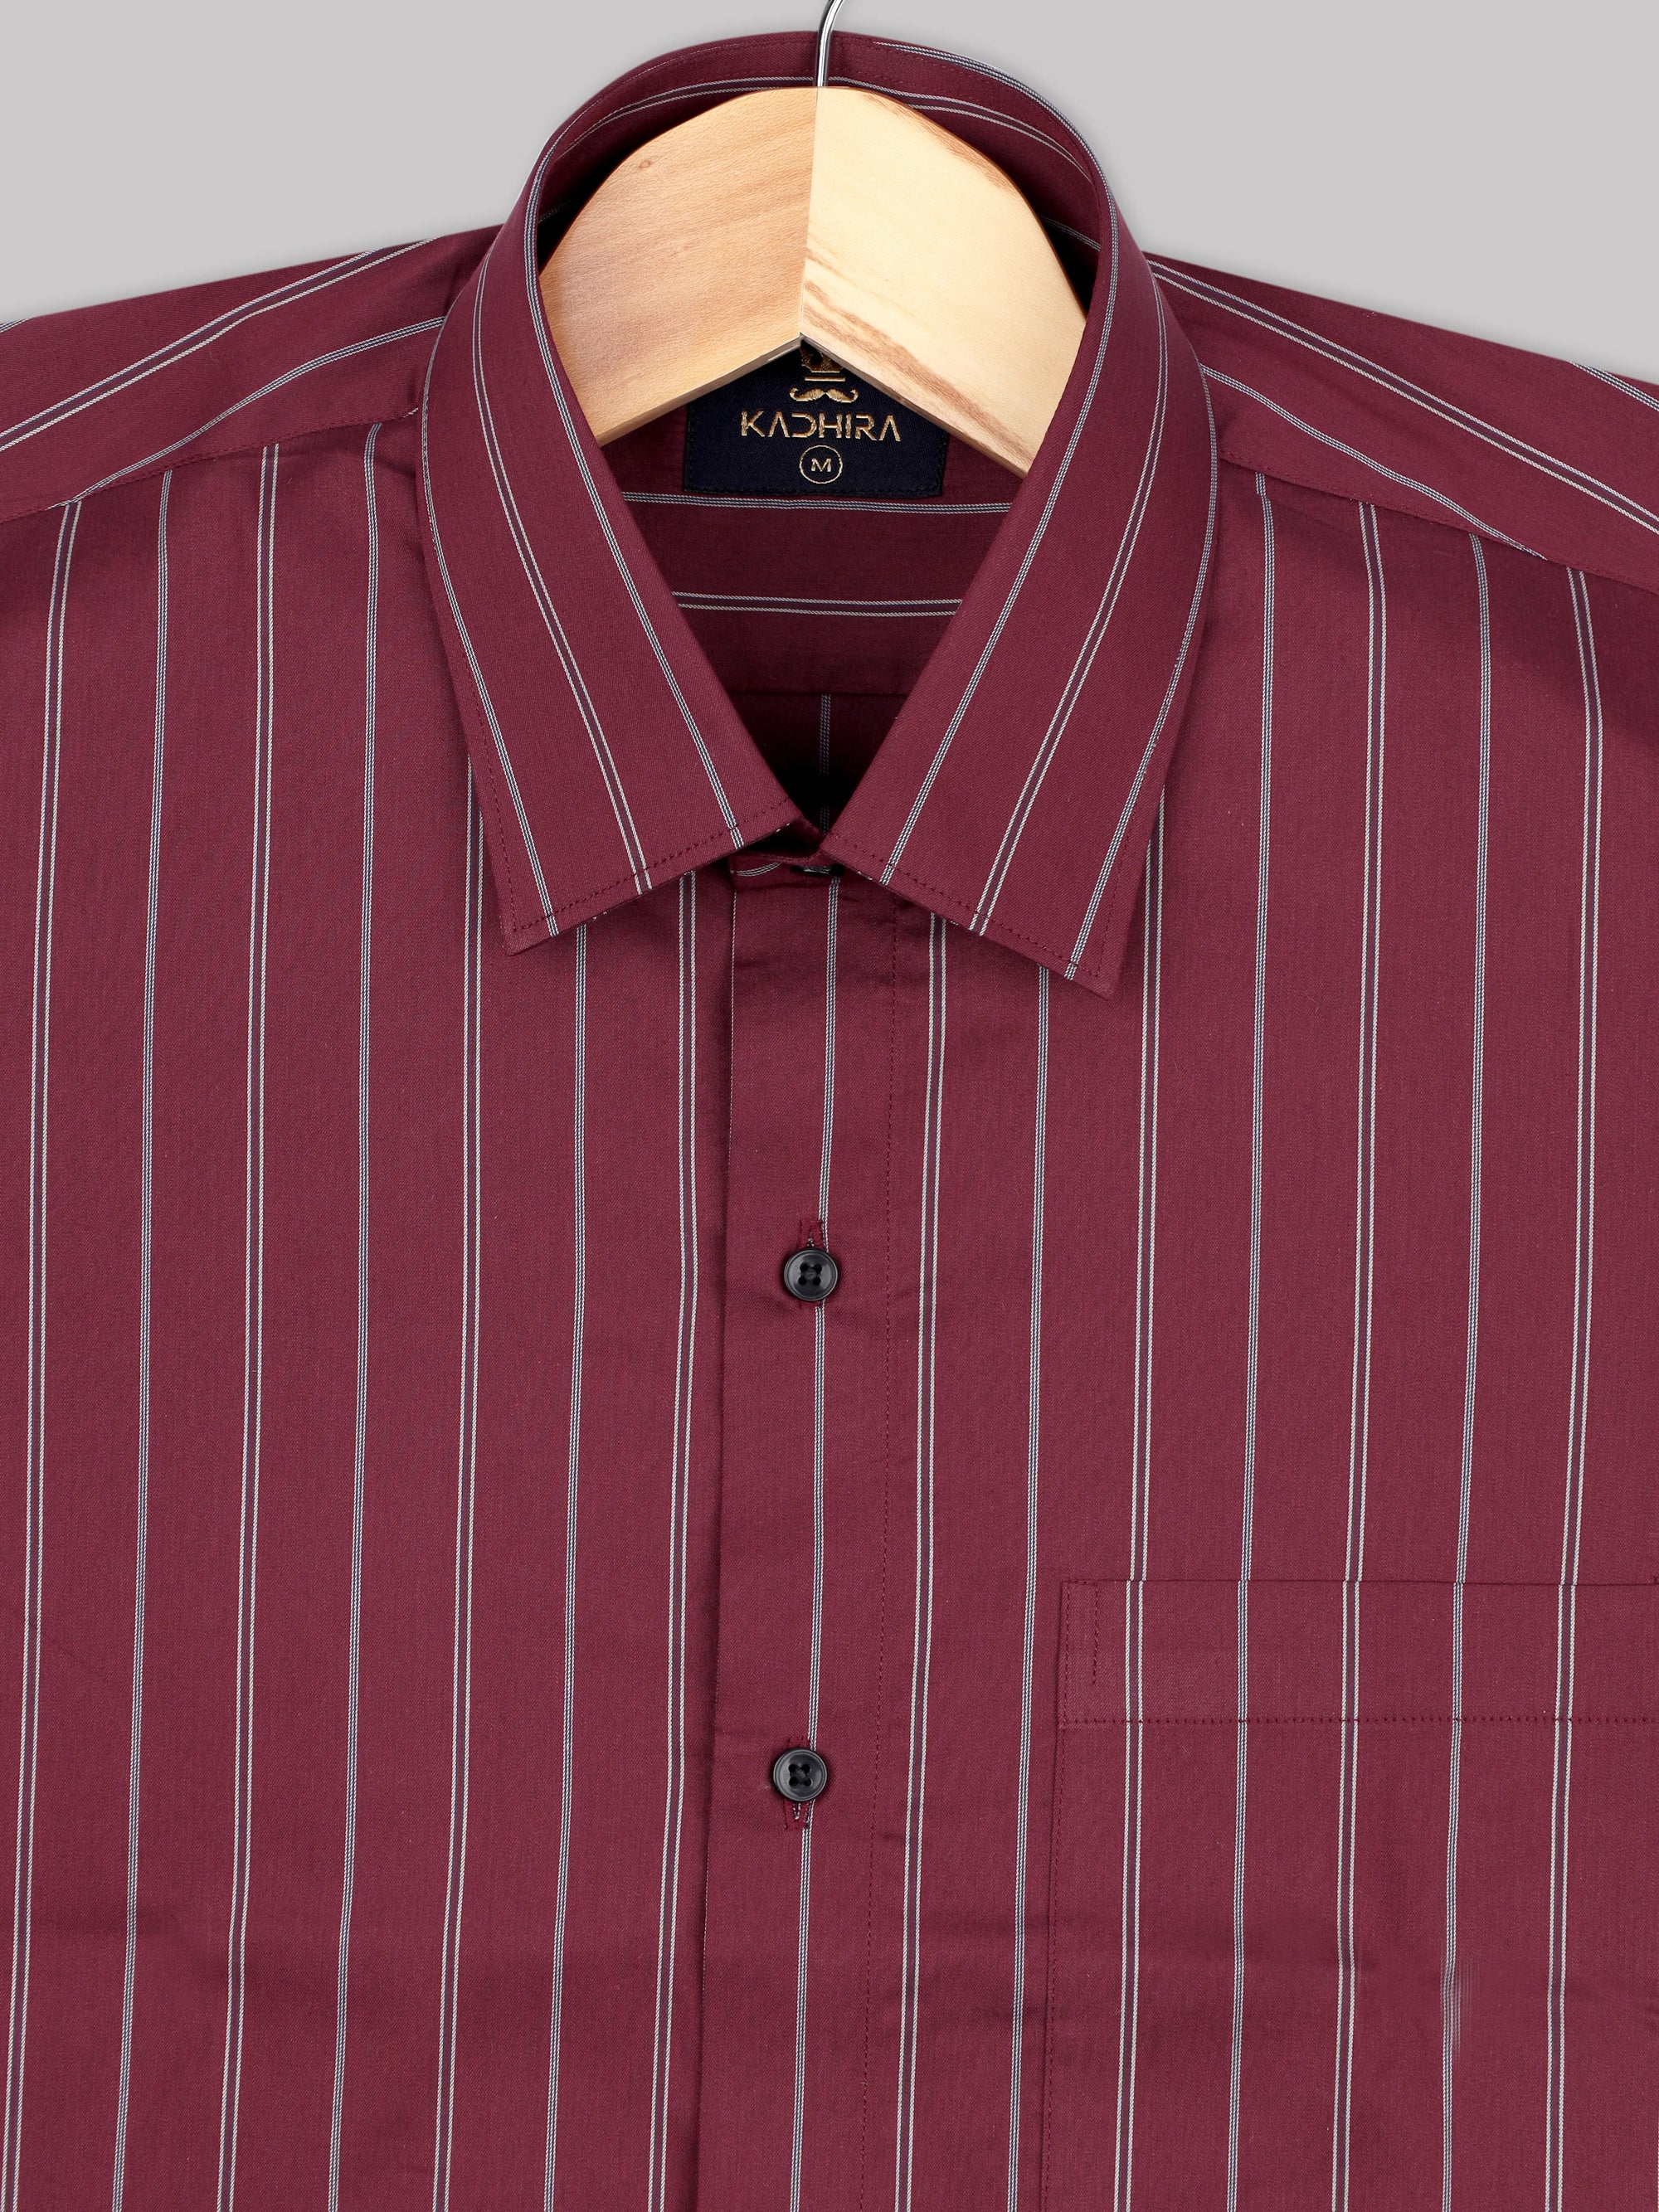 Dark Red With White  Bayadere Stripes Premium Cotton Shirt-[ON SALE]